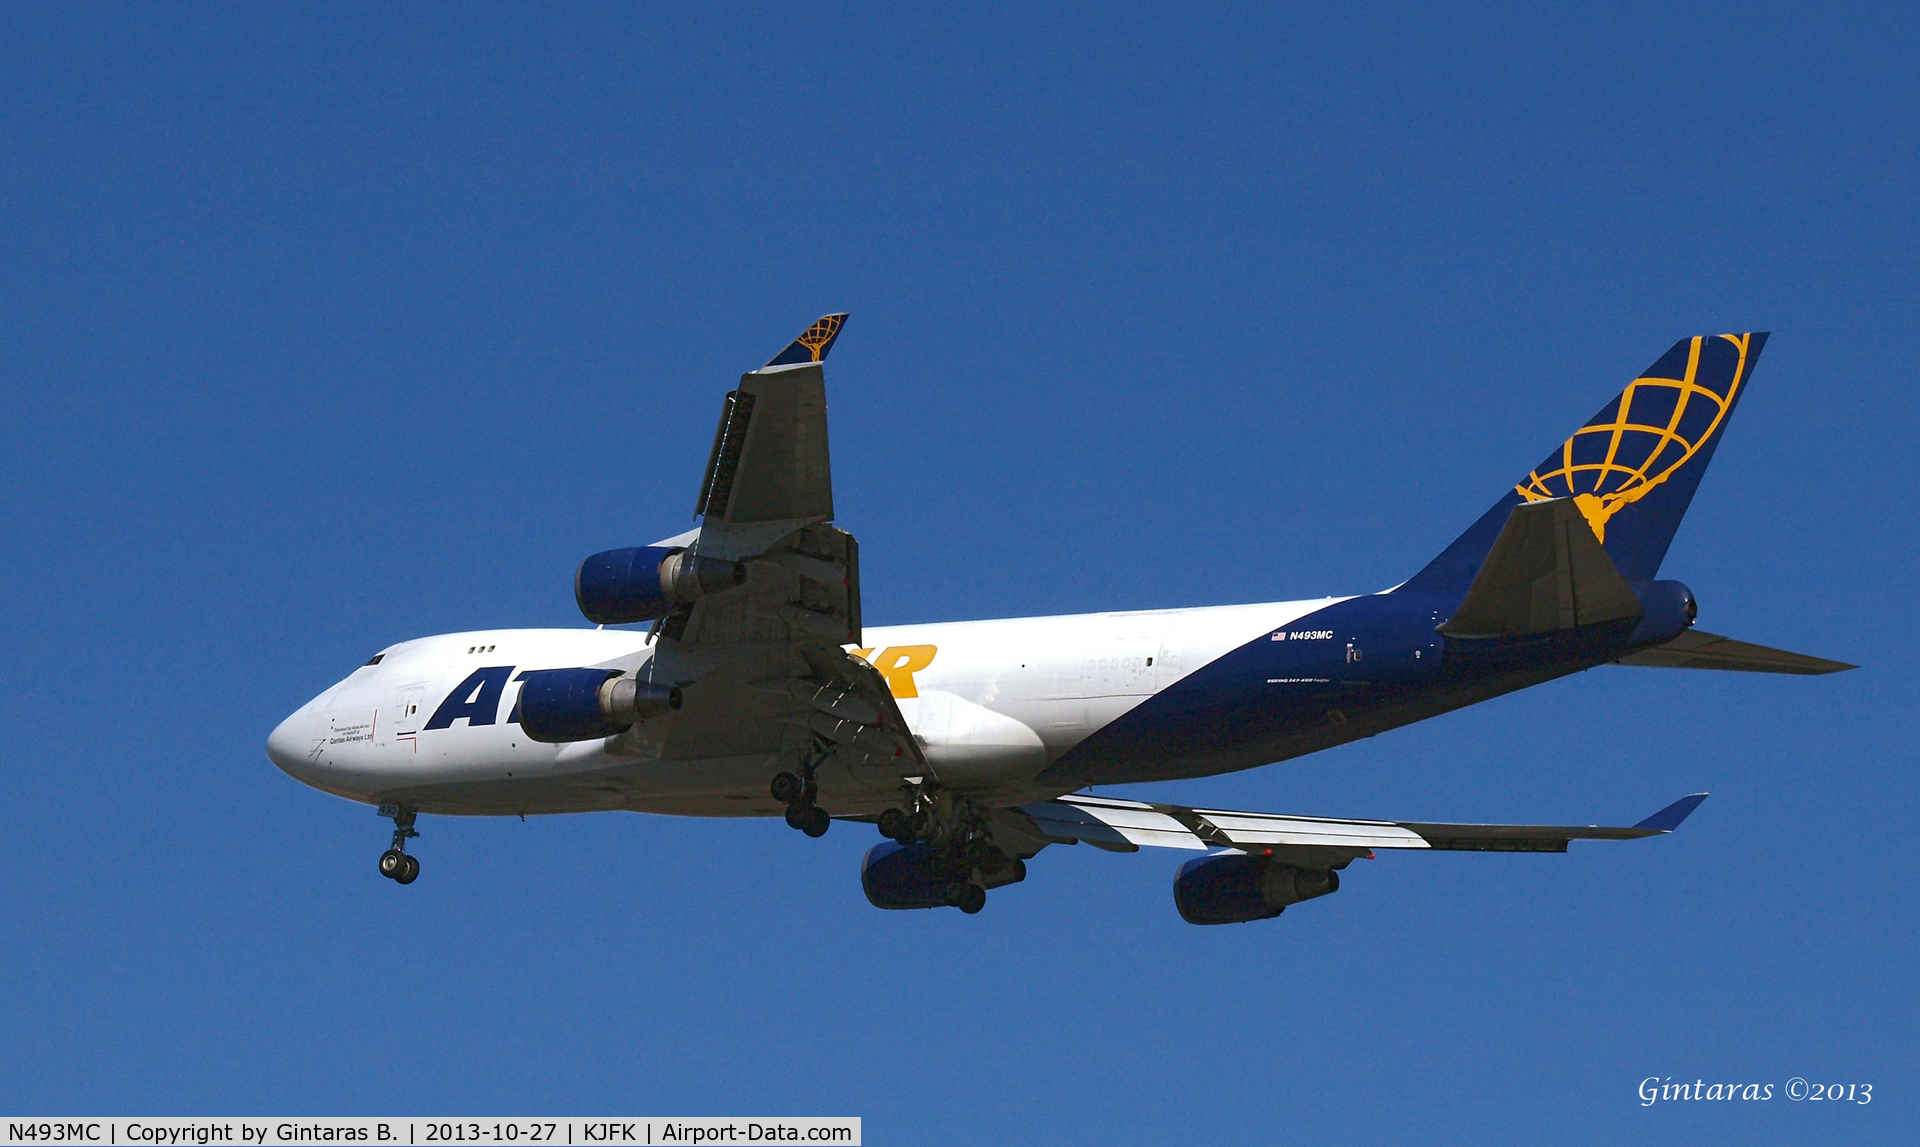 N493MC, 1998 Boeing 747-47UF C/N 29254, Going to a landing on 31R @ JFK